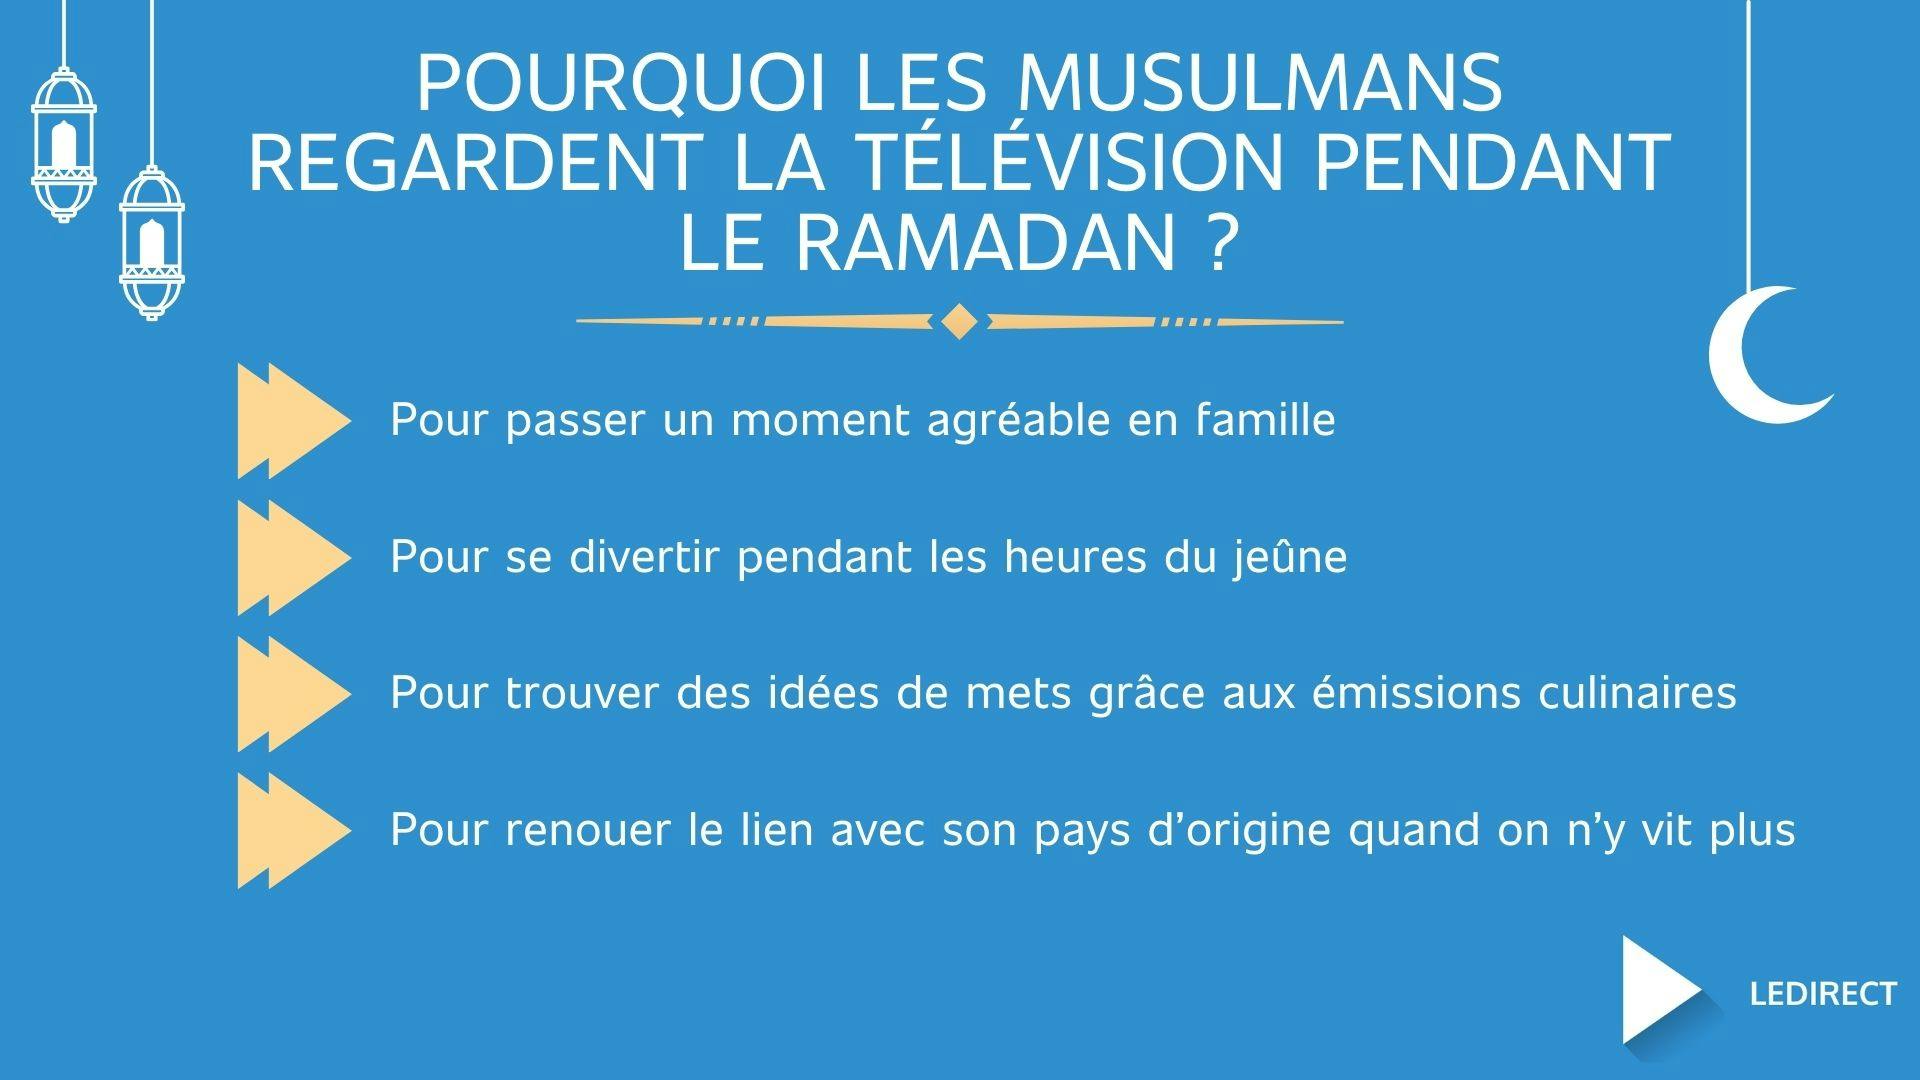 Illustration montrant 4 raisons pour lesquelles les musulmans regardent la télé pendant le ramadan